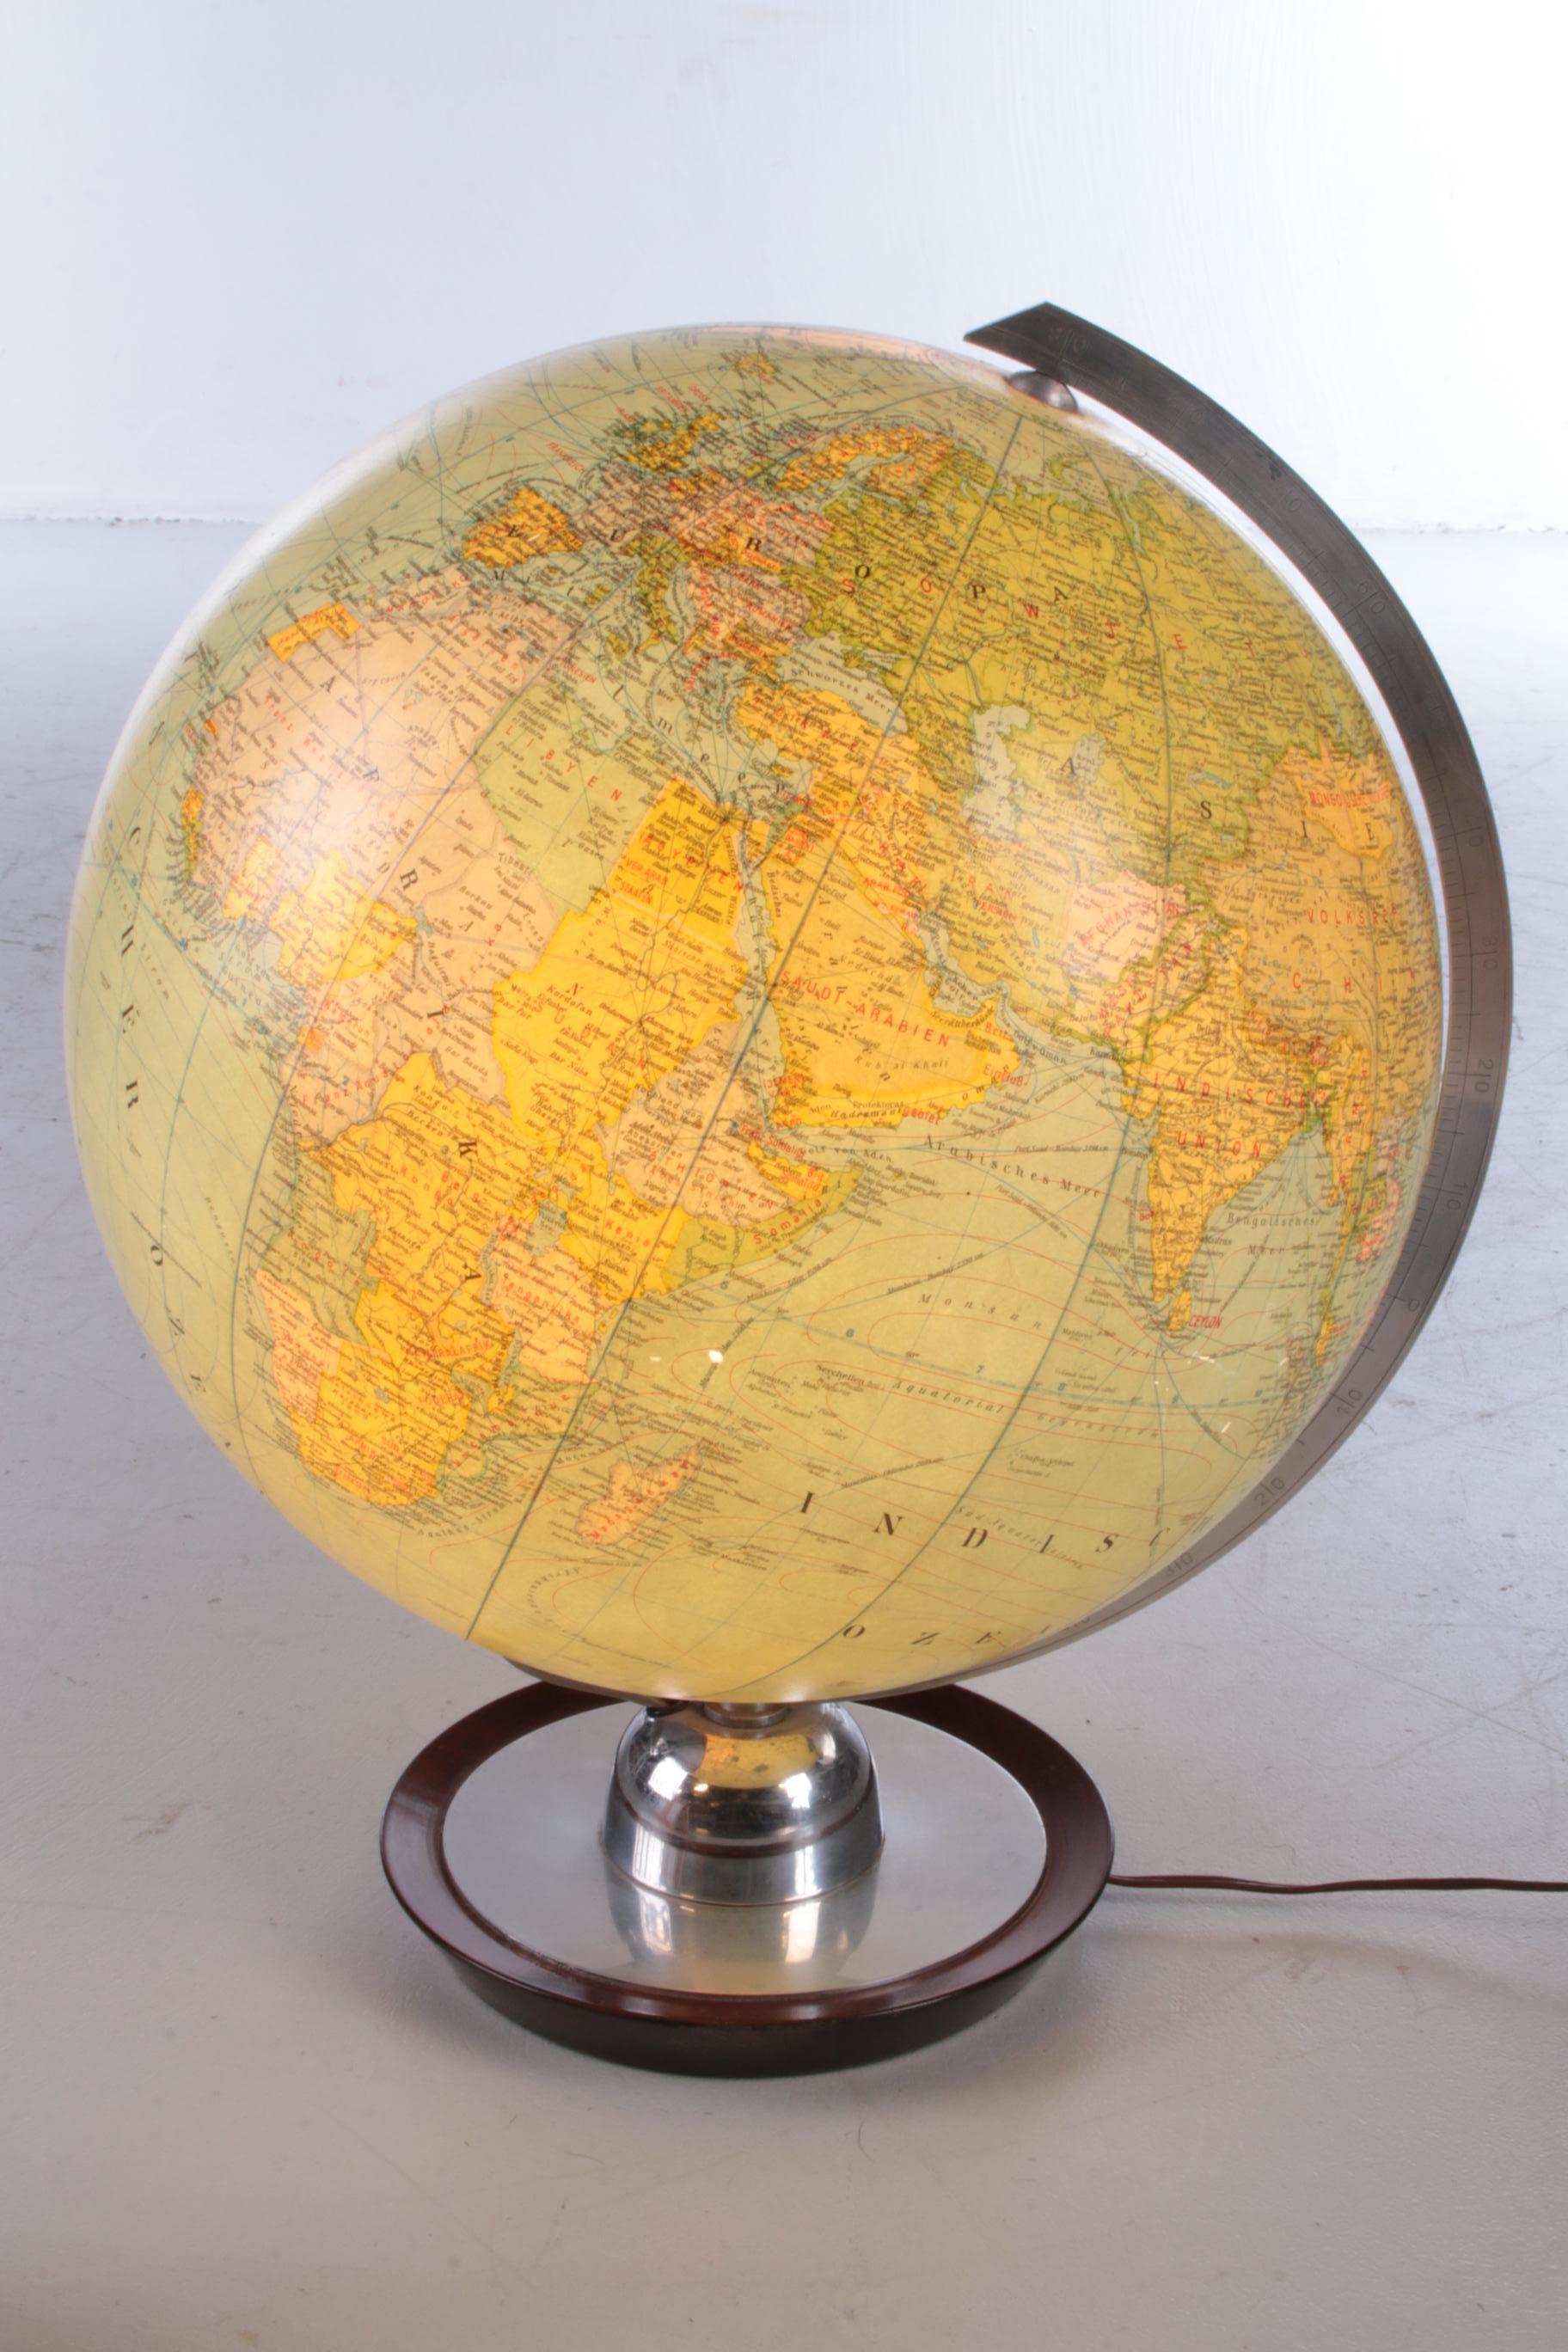 germany on a globe